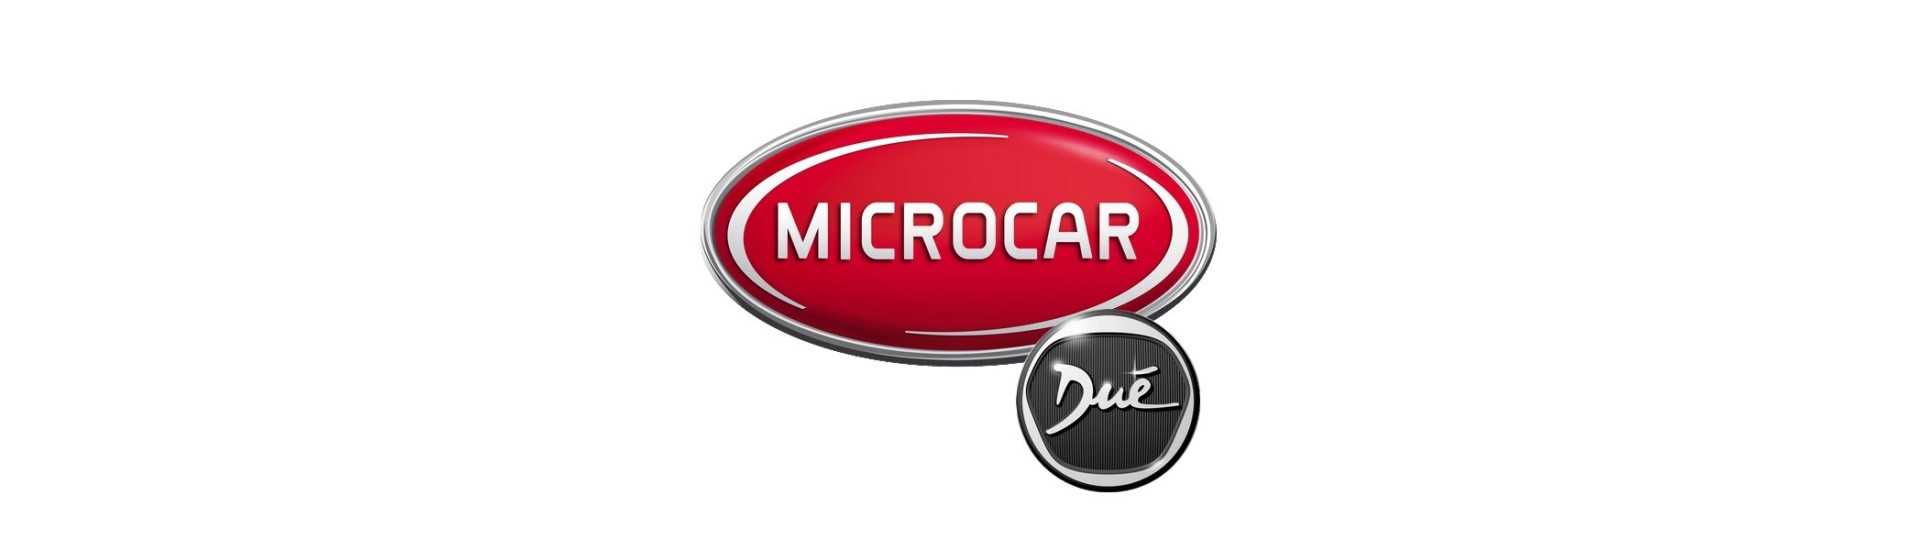 Parada de puerta al mejor precio para coche sin permiso Microcar Dué